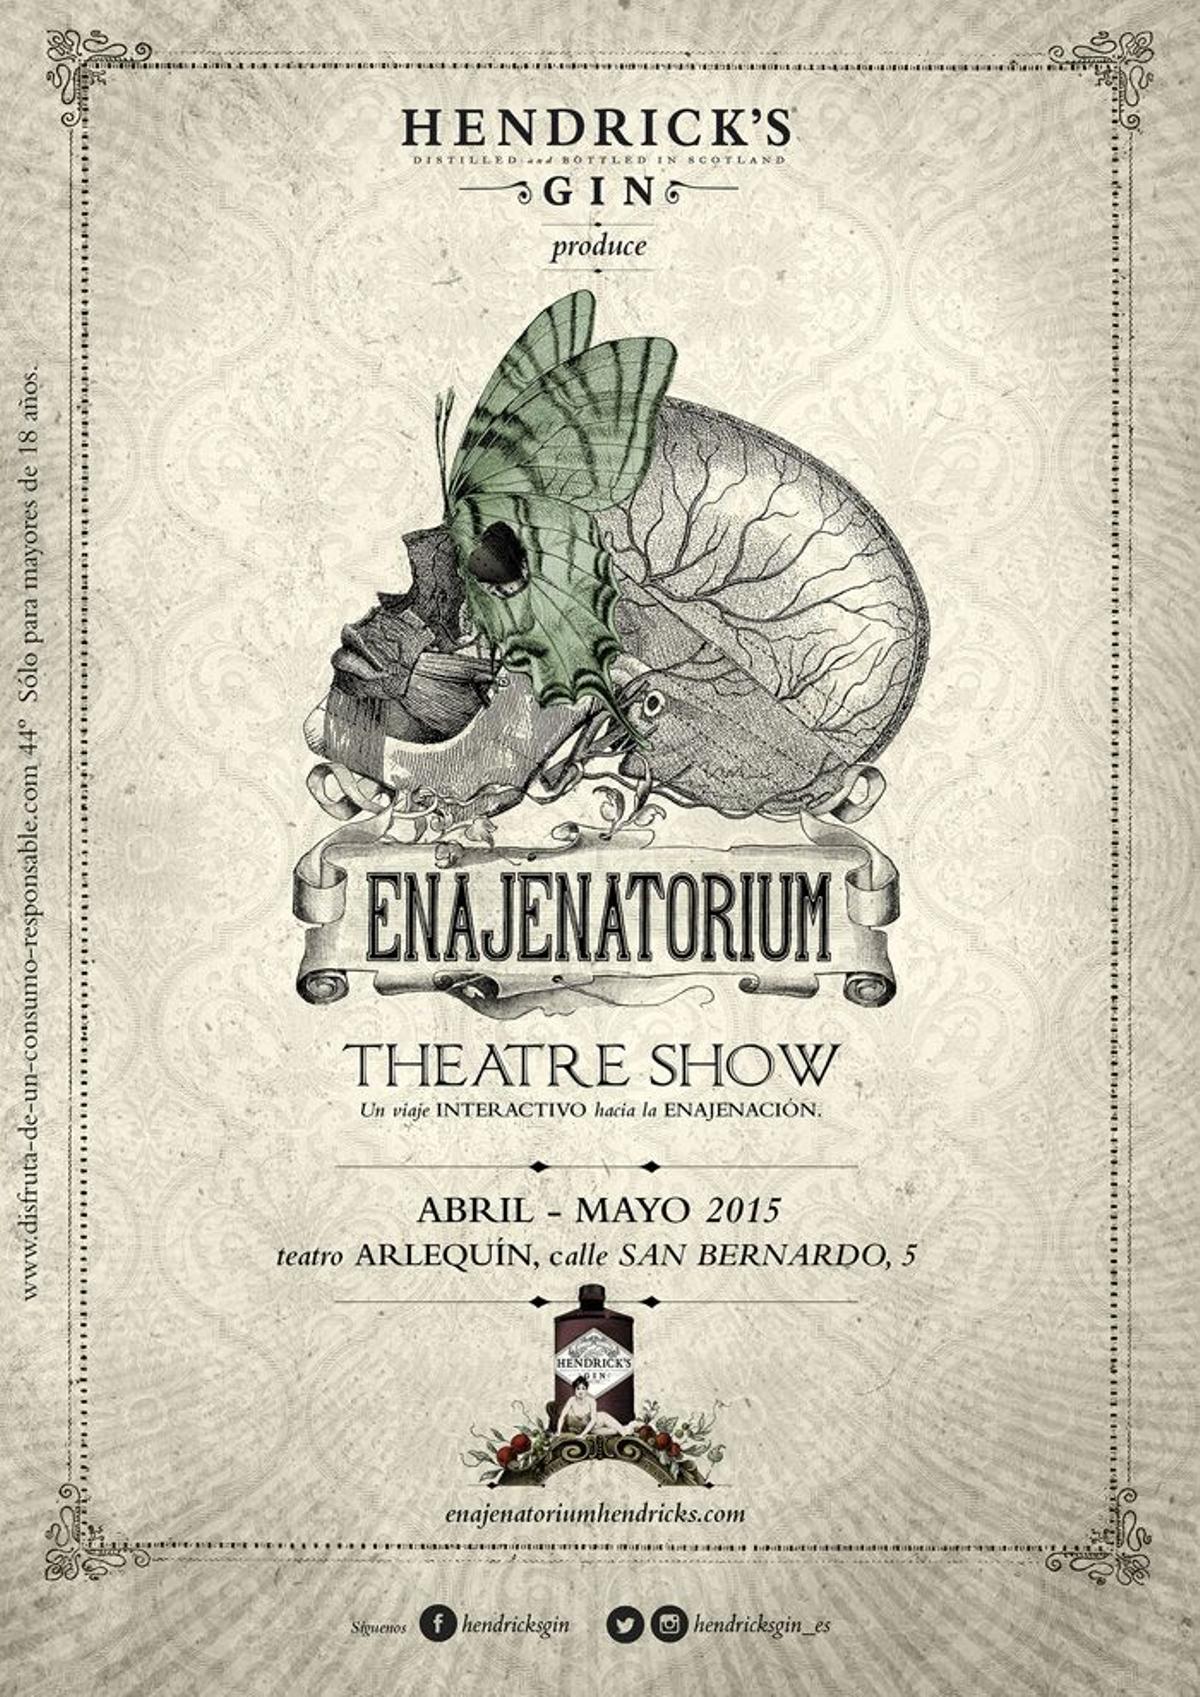 Enajenatorium theatre show, Madrid